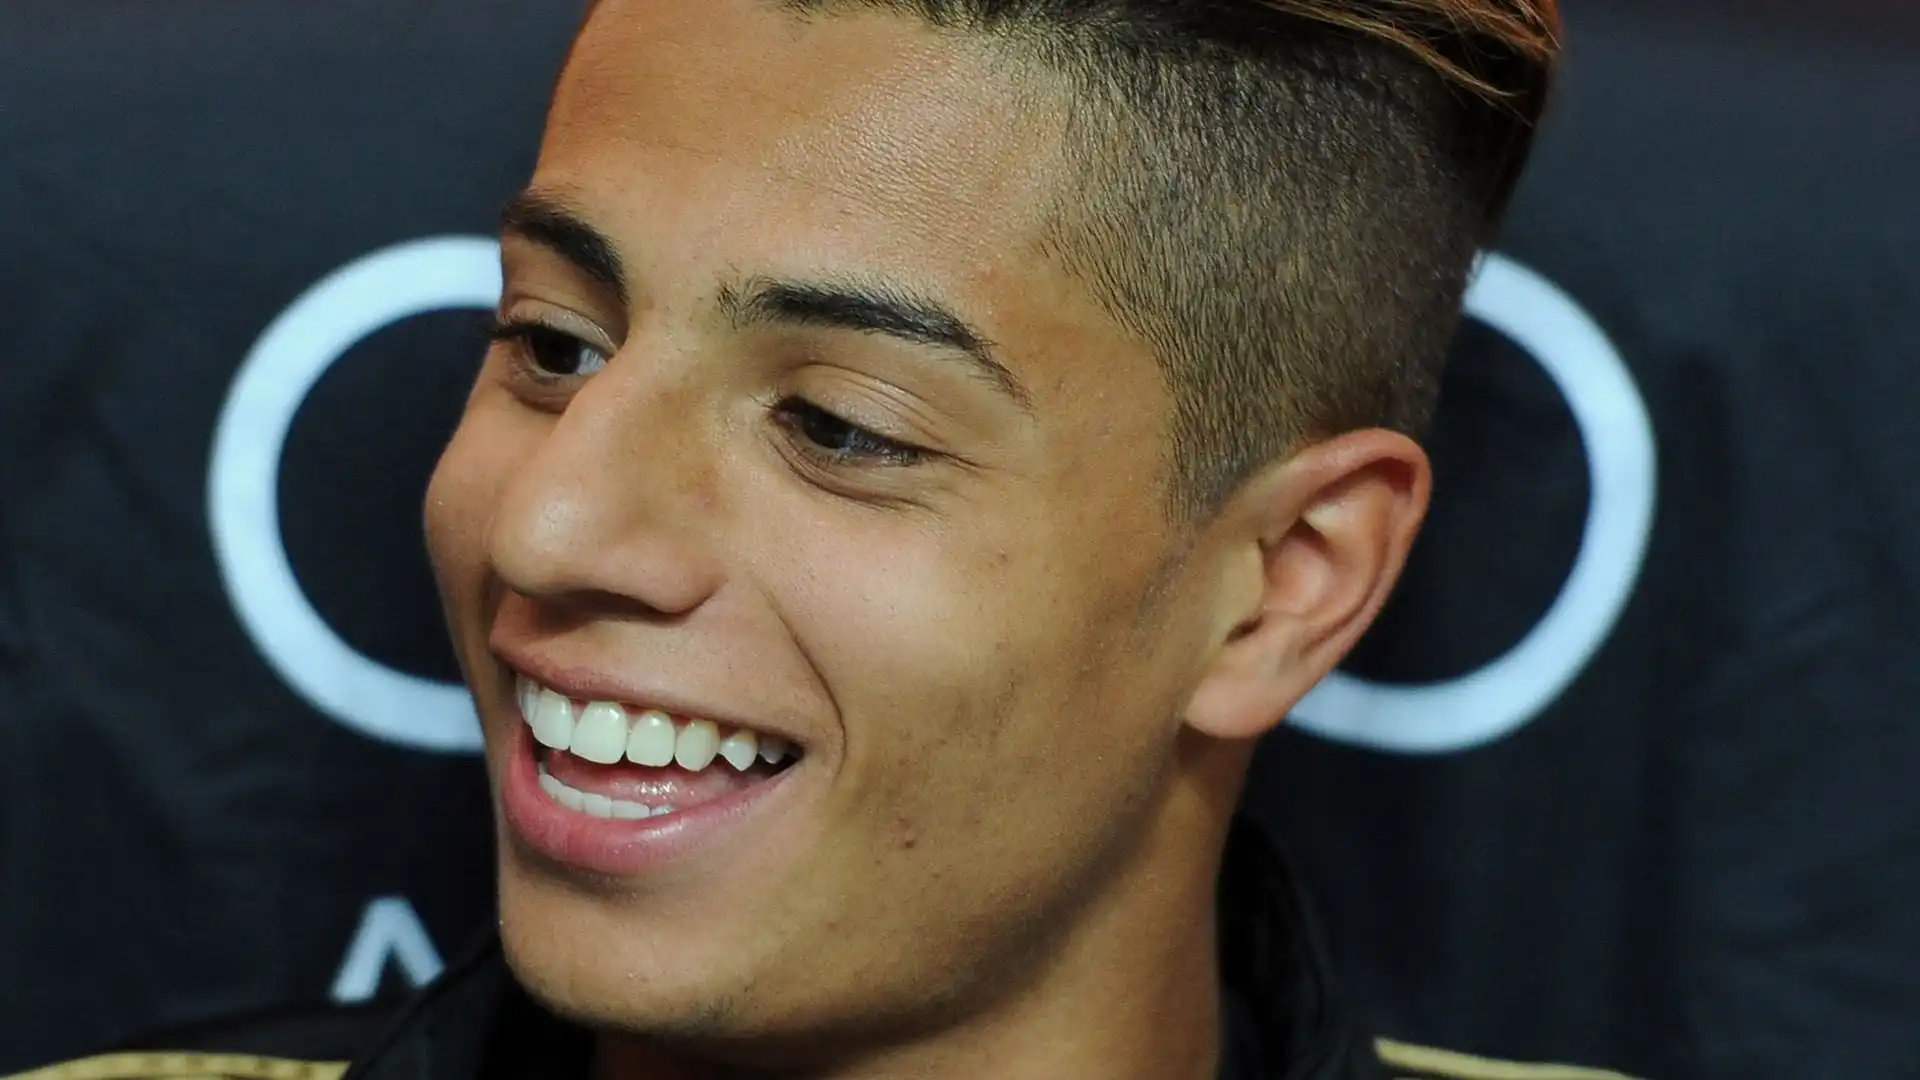 Il marocchino mostrava qualità tecniche da videogame e all'età di 15 anni registrò uno spot con Neymar